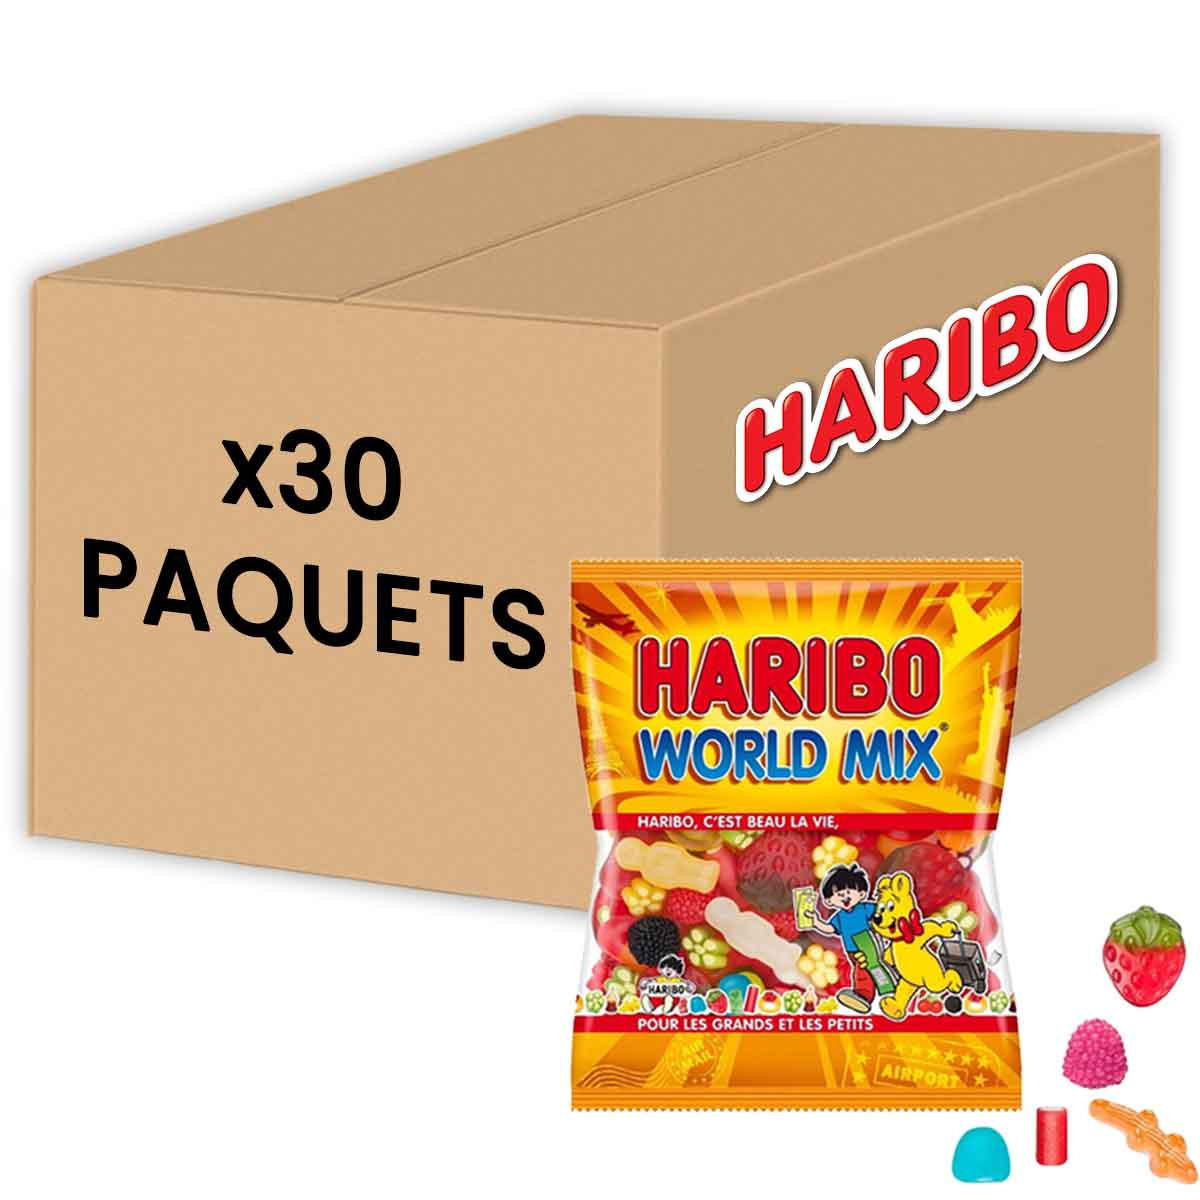 Val-de-Marne : dans son paquet de bonbons Haribo, elle découvre